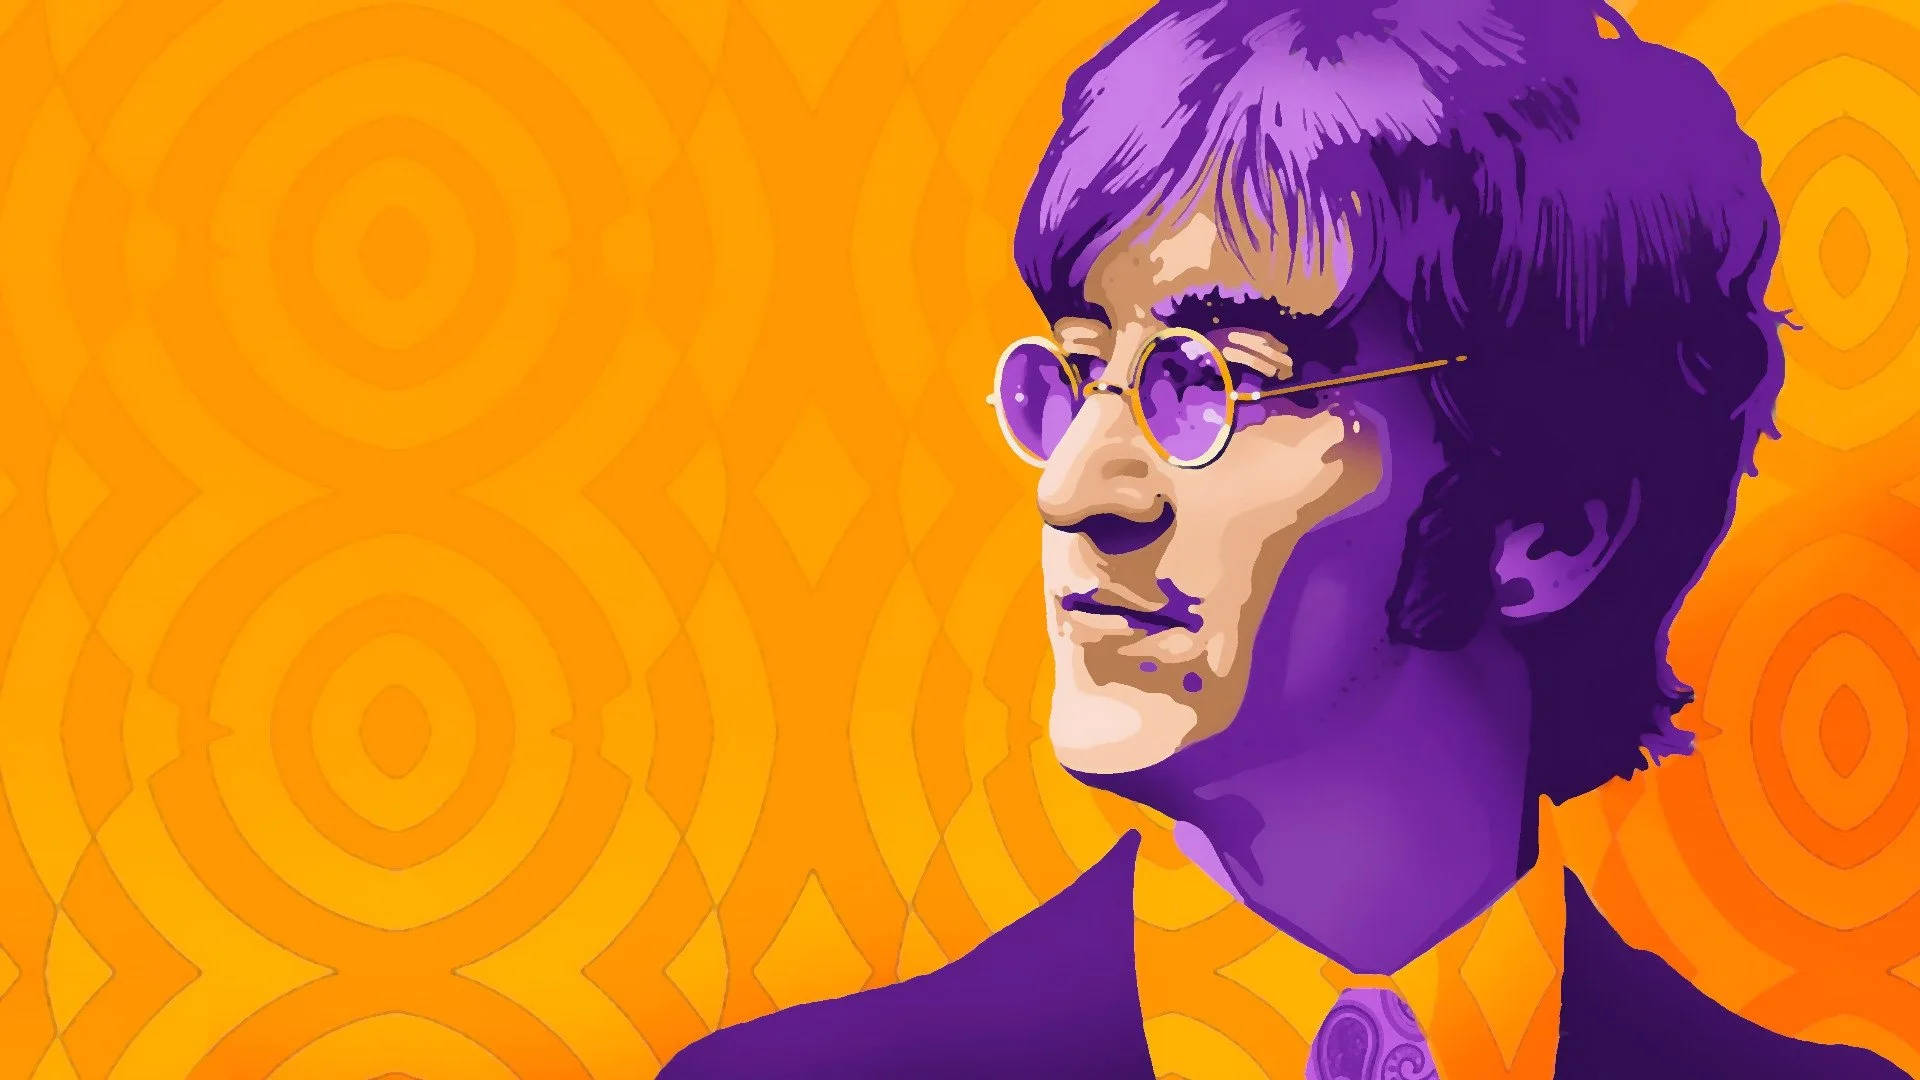 John Lennon Pop Art Background